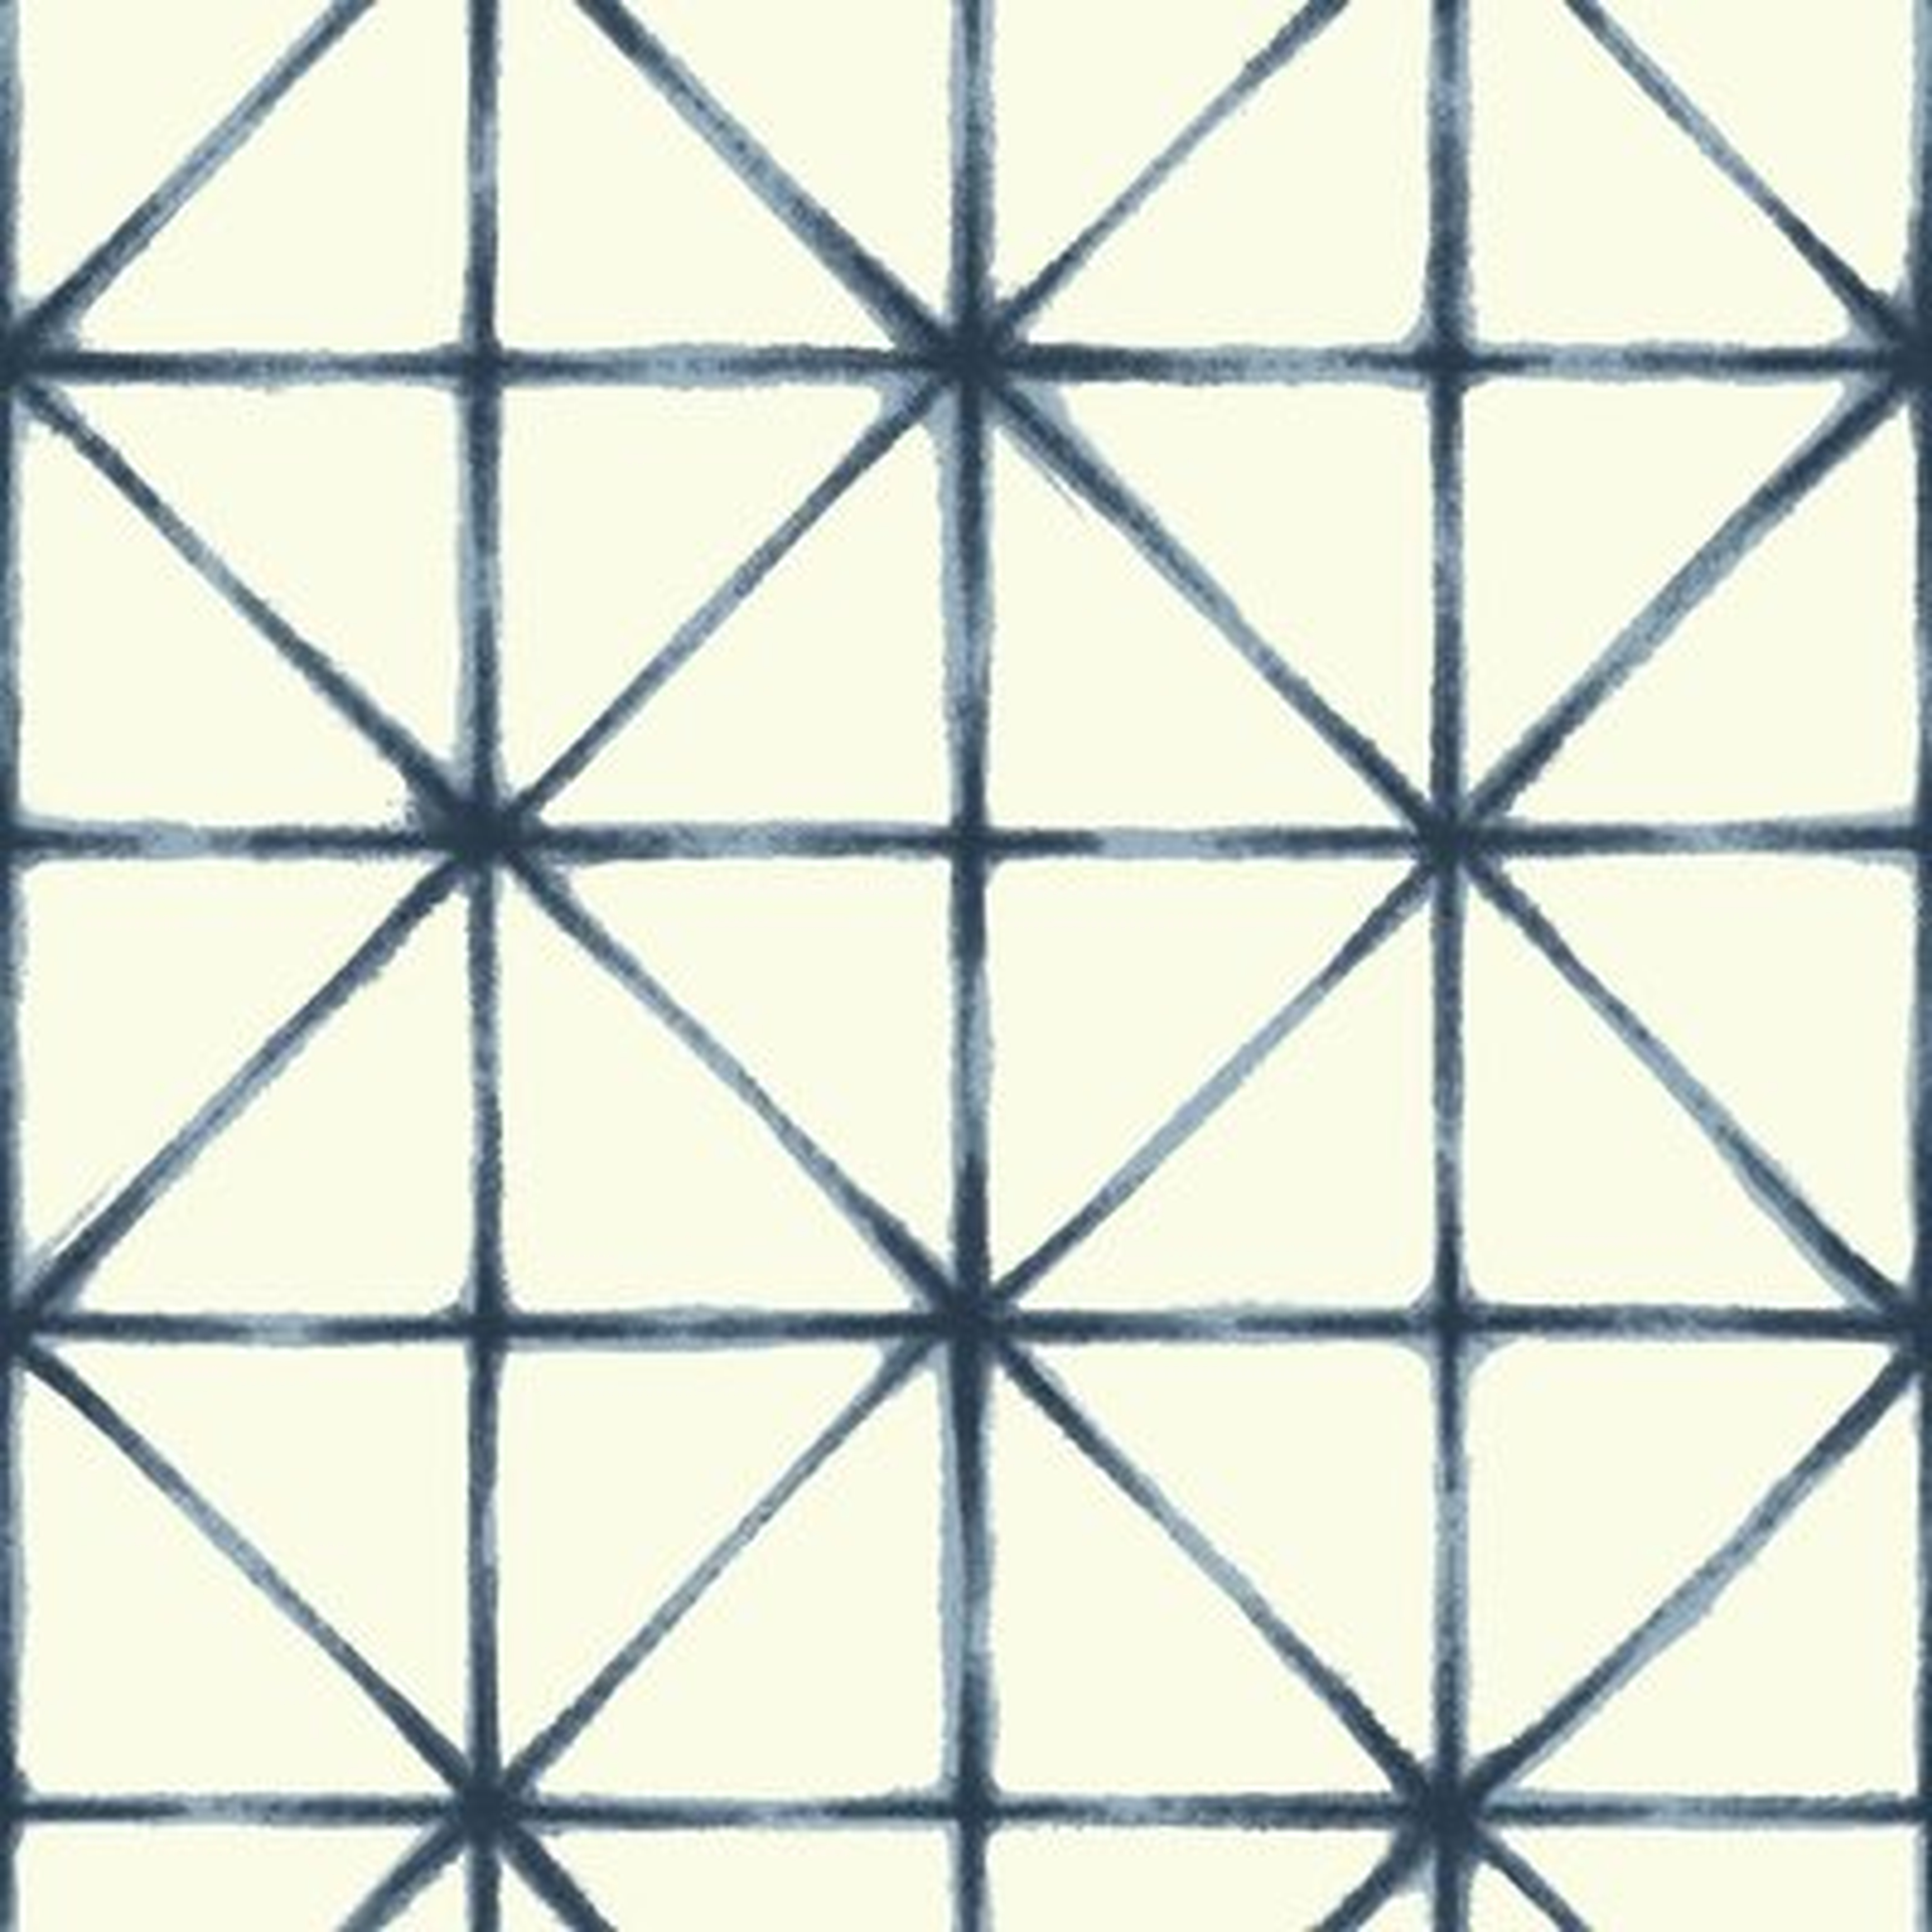 Folden Modern 16.5' L x 20.5" W Geometric Peel and Stick Wallpaper Roll - AllModern